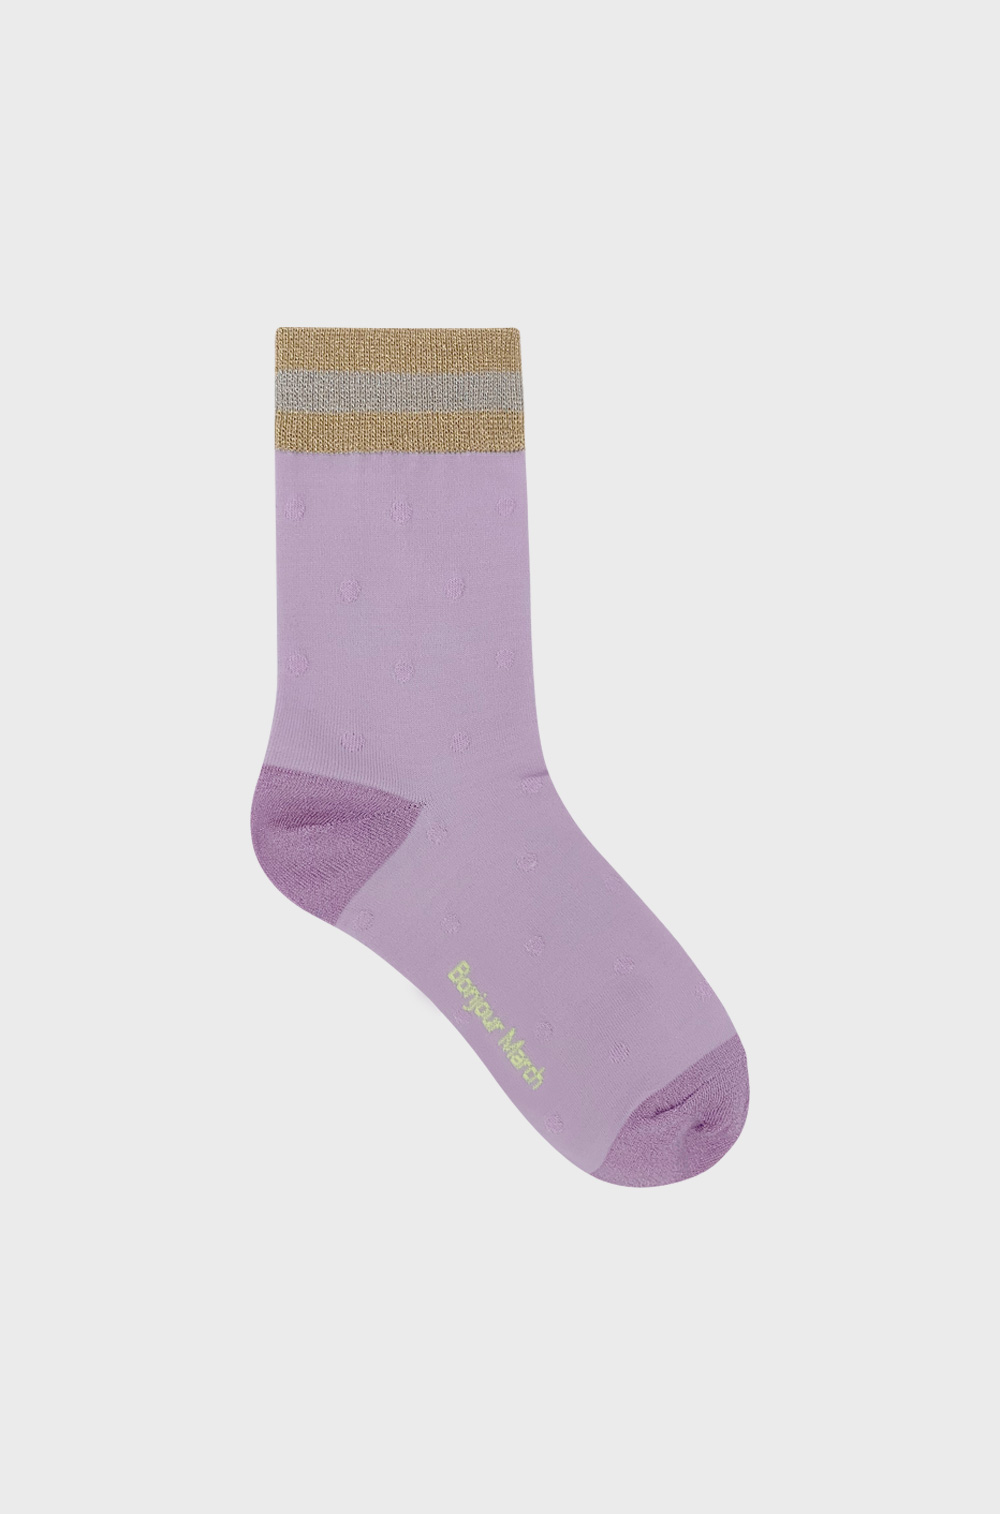 Vintage Lavender socks